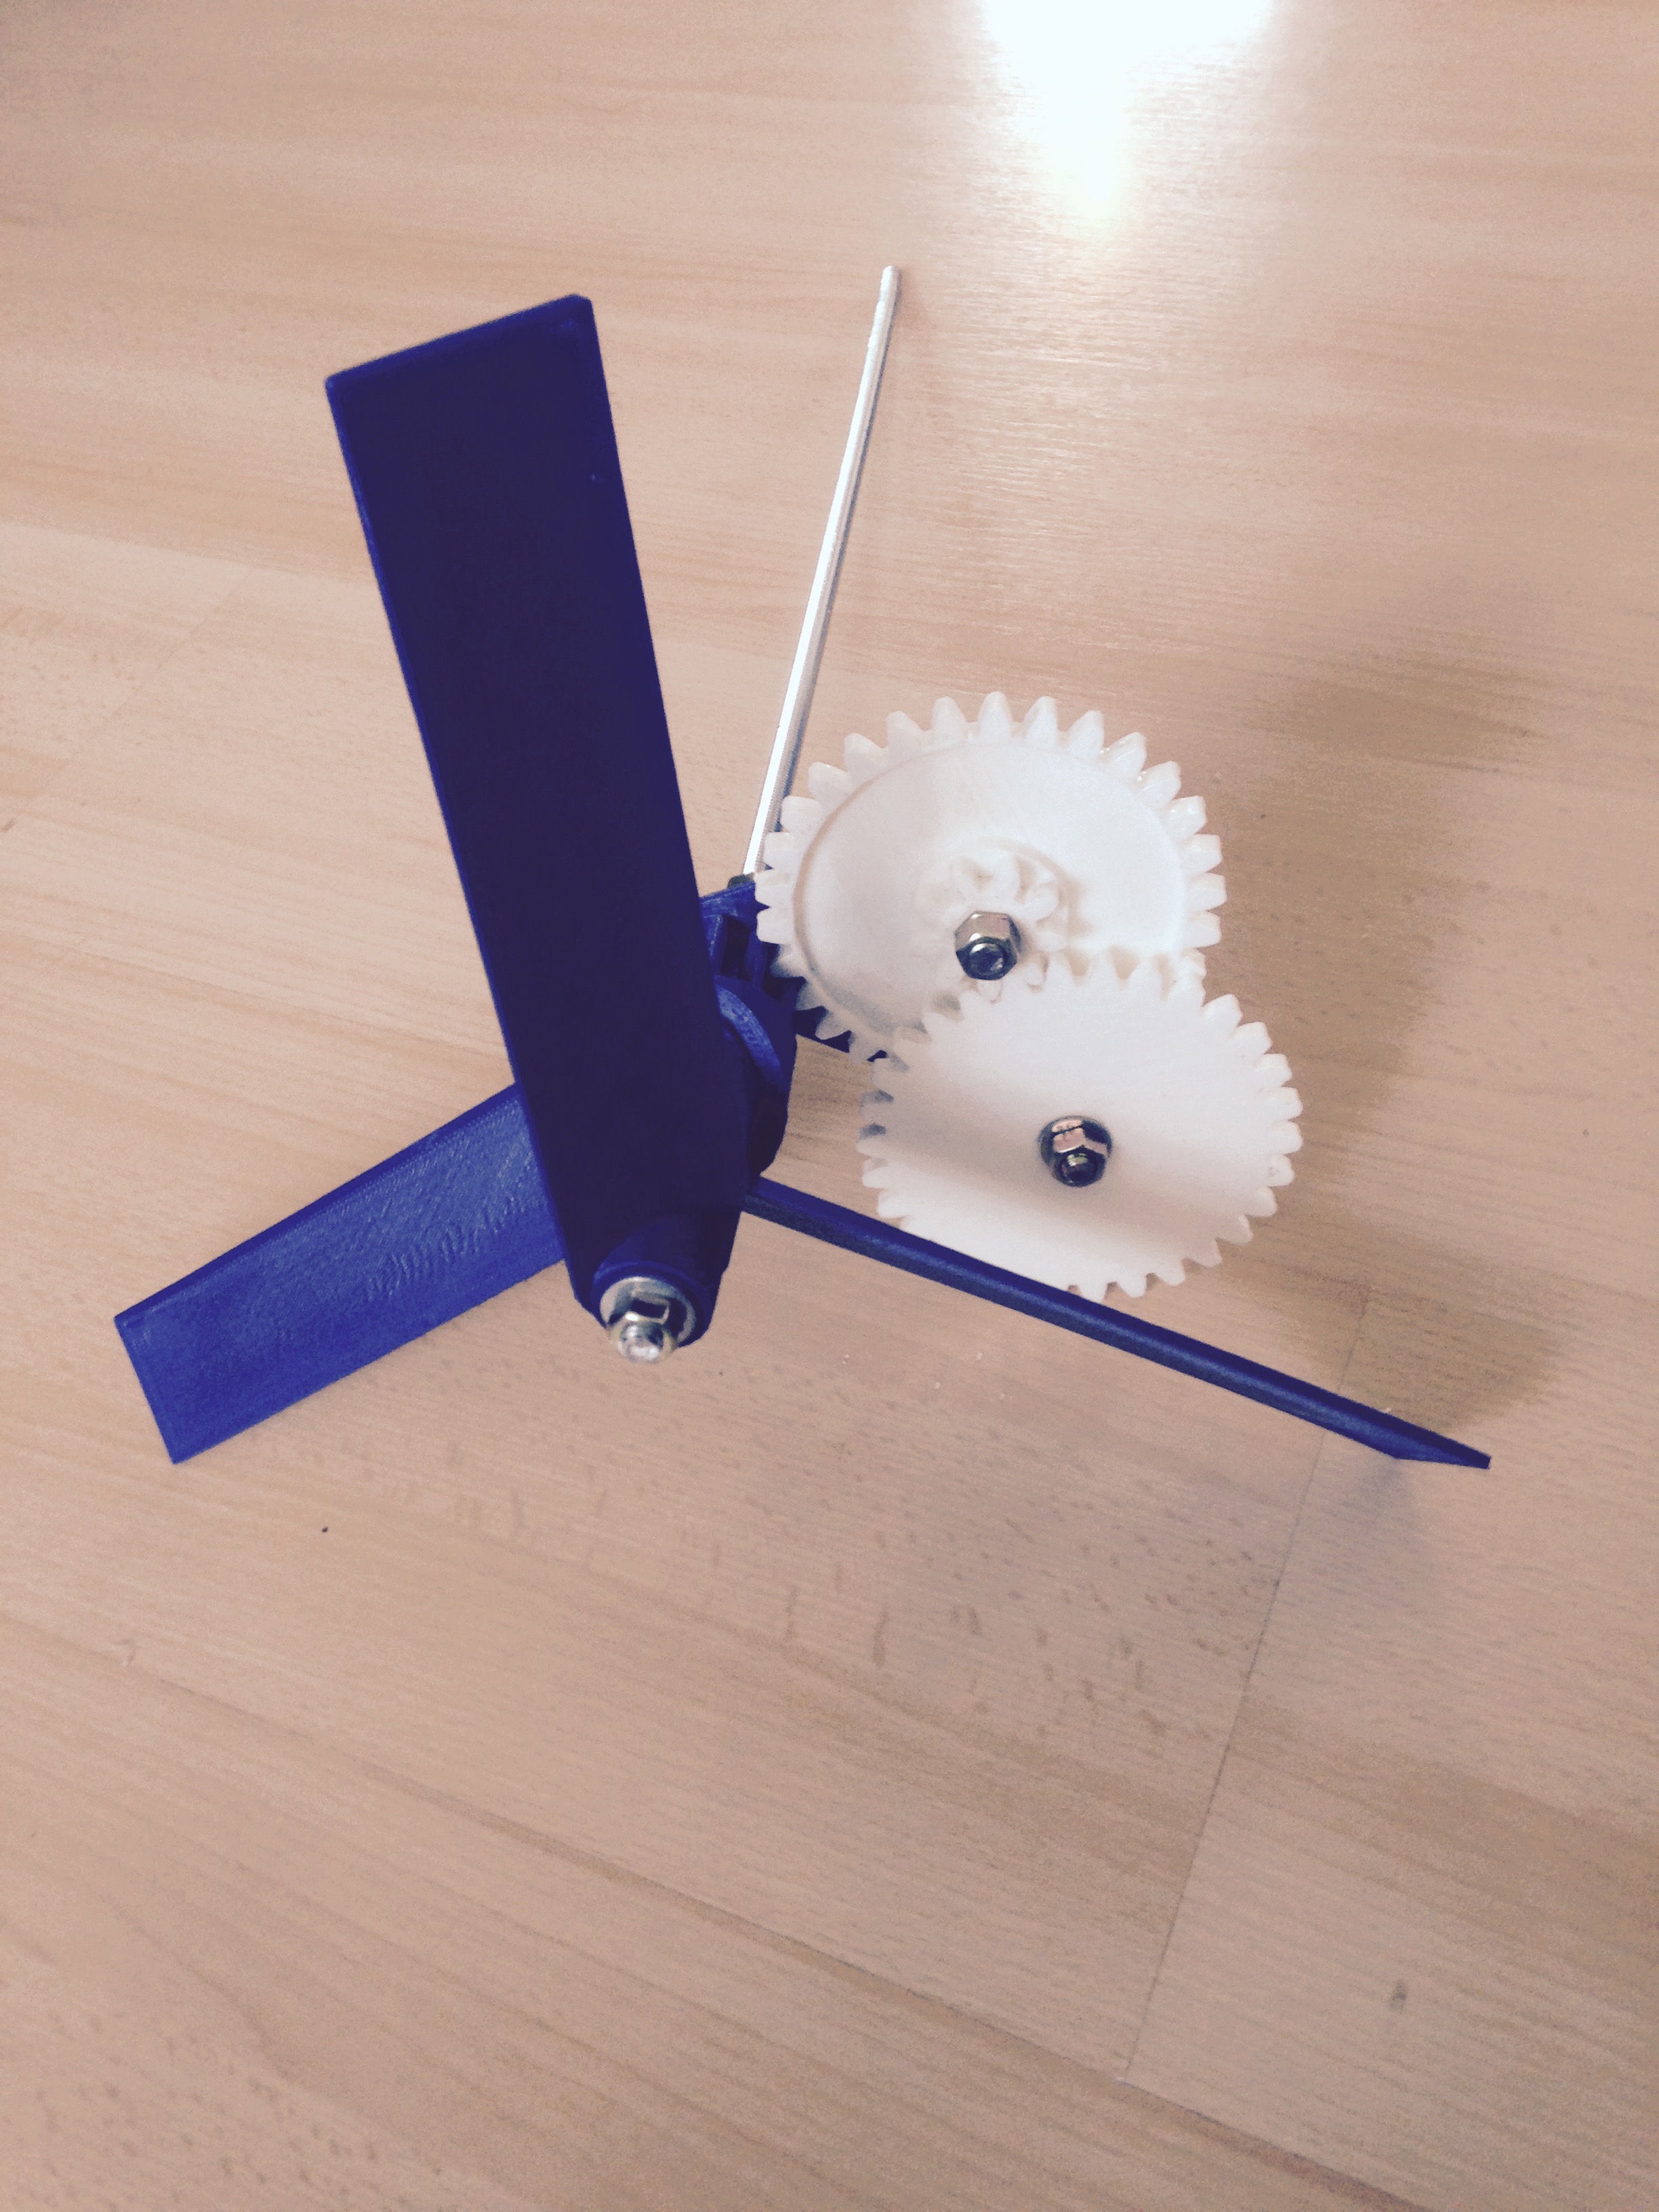 Geared windmill drive